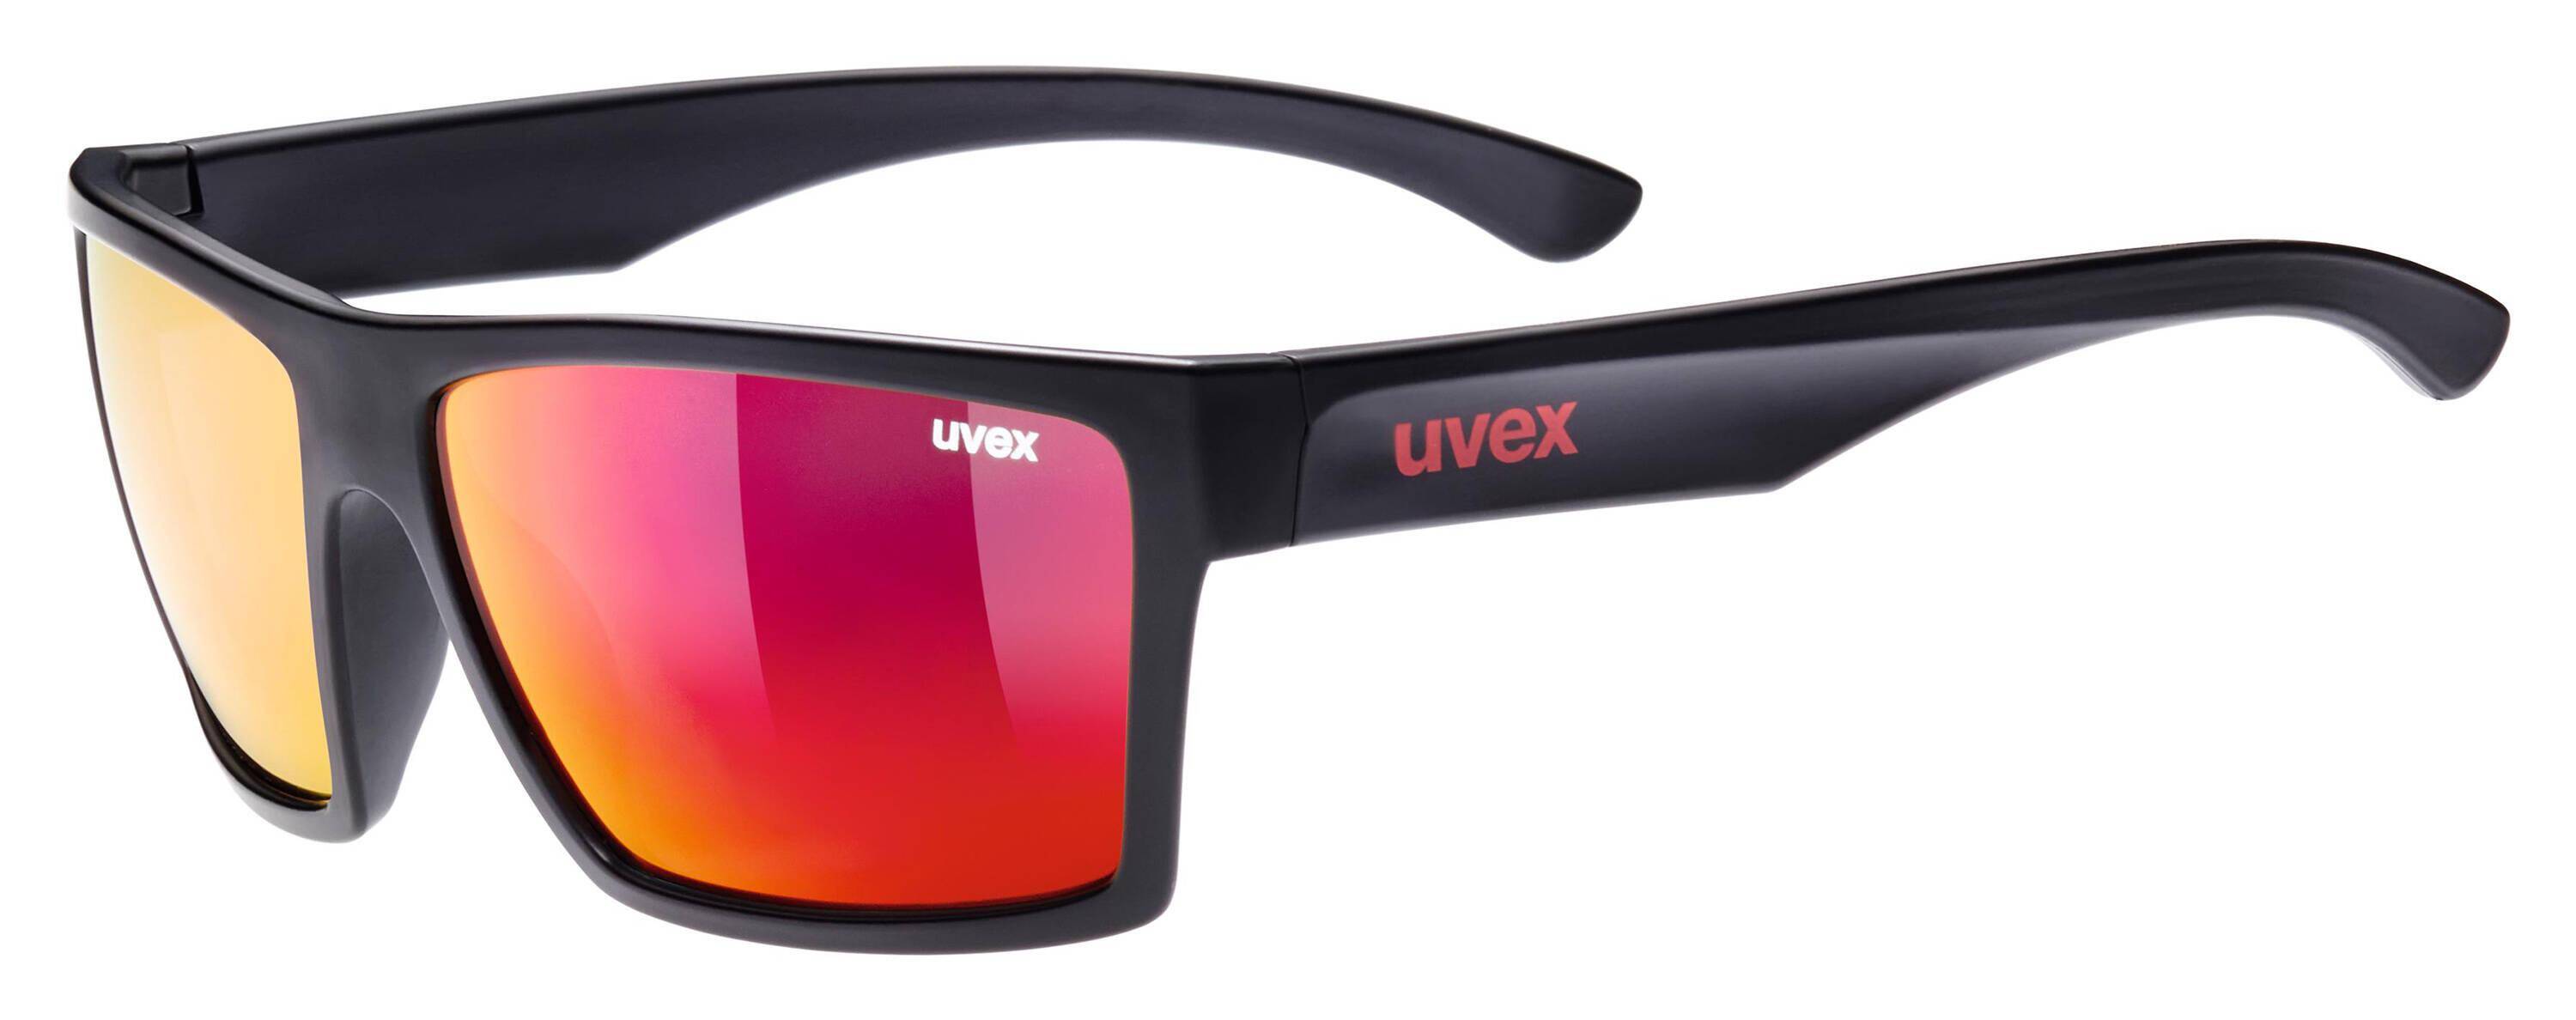 Okulary Uvex Lgl 29 przeciwsłoneczne (Zdjęcie 2)